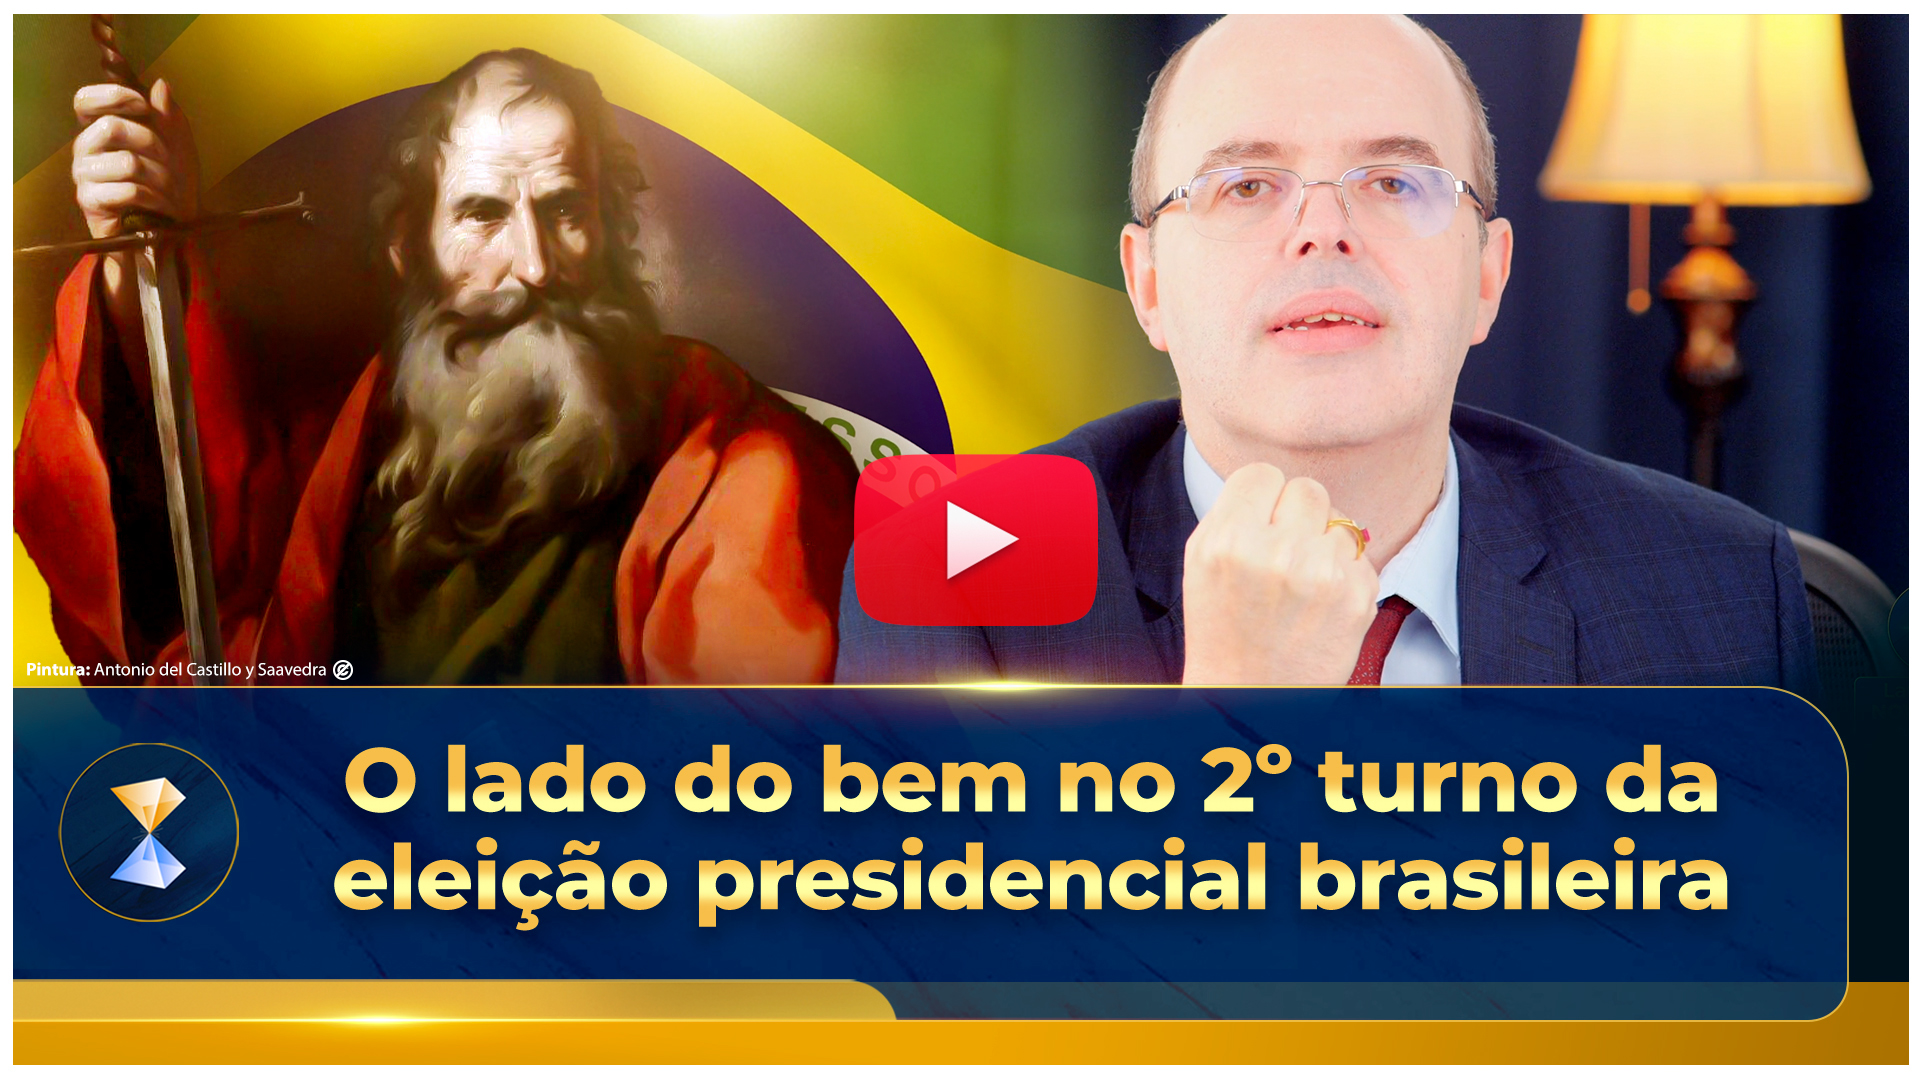 O lado do bem no 2º turno da eleição presidencial brasileira